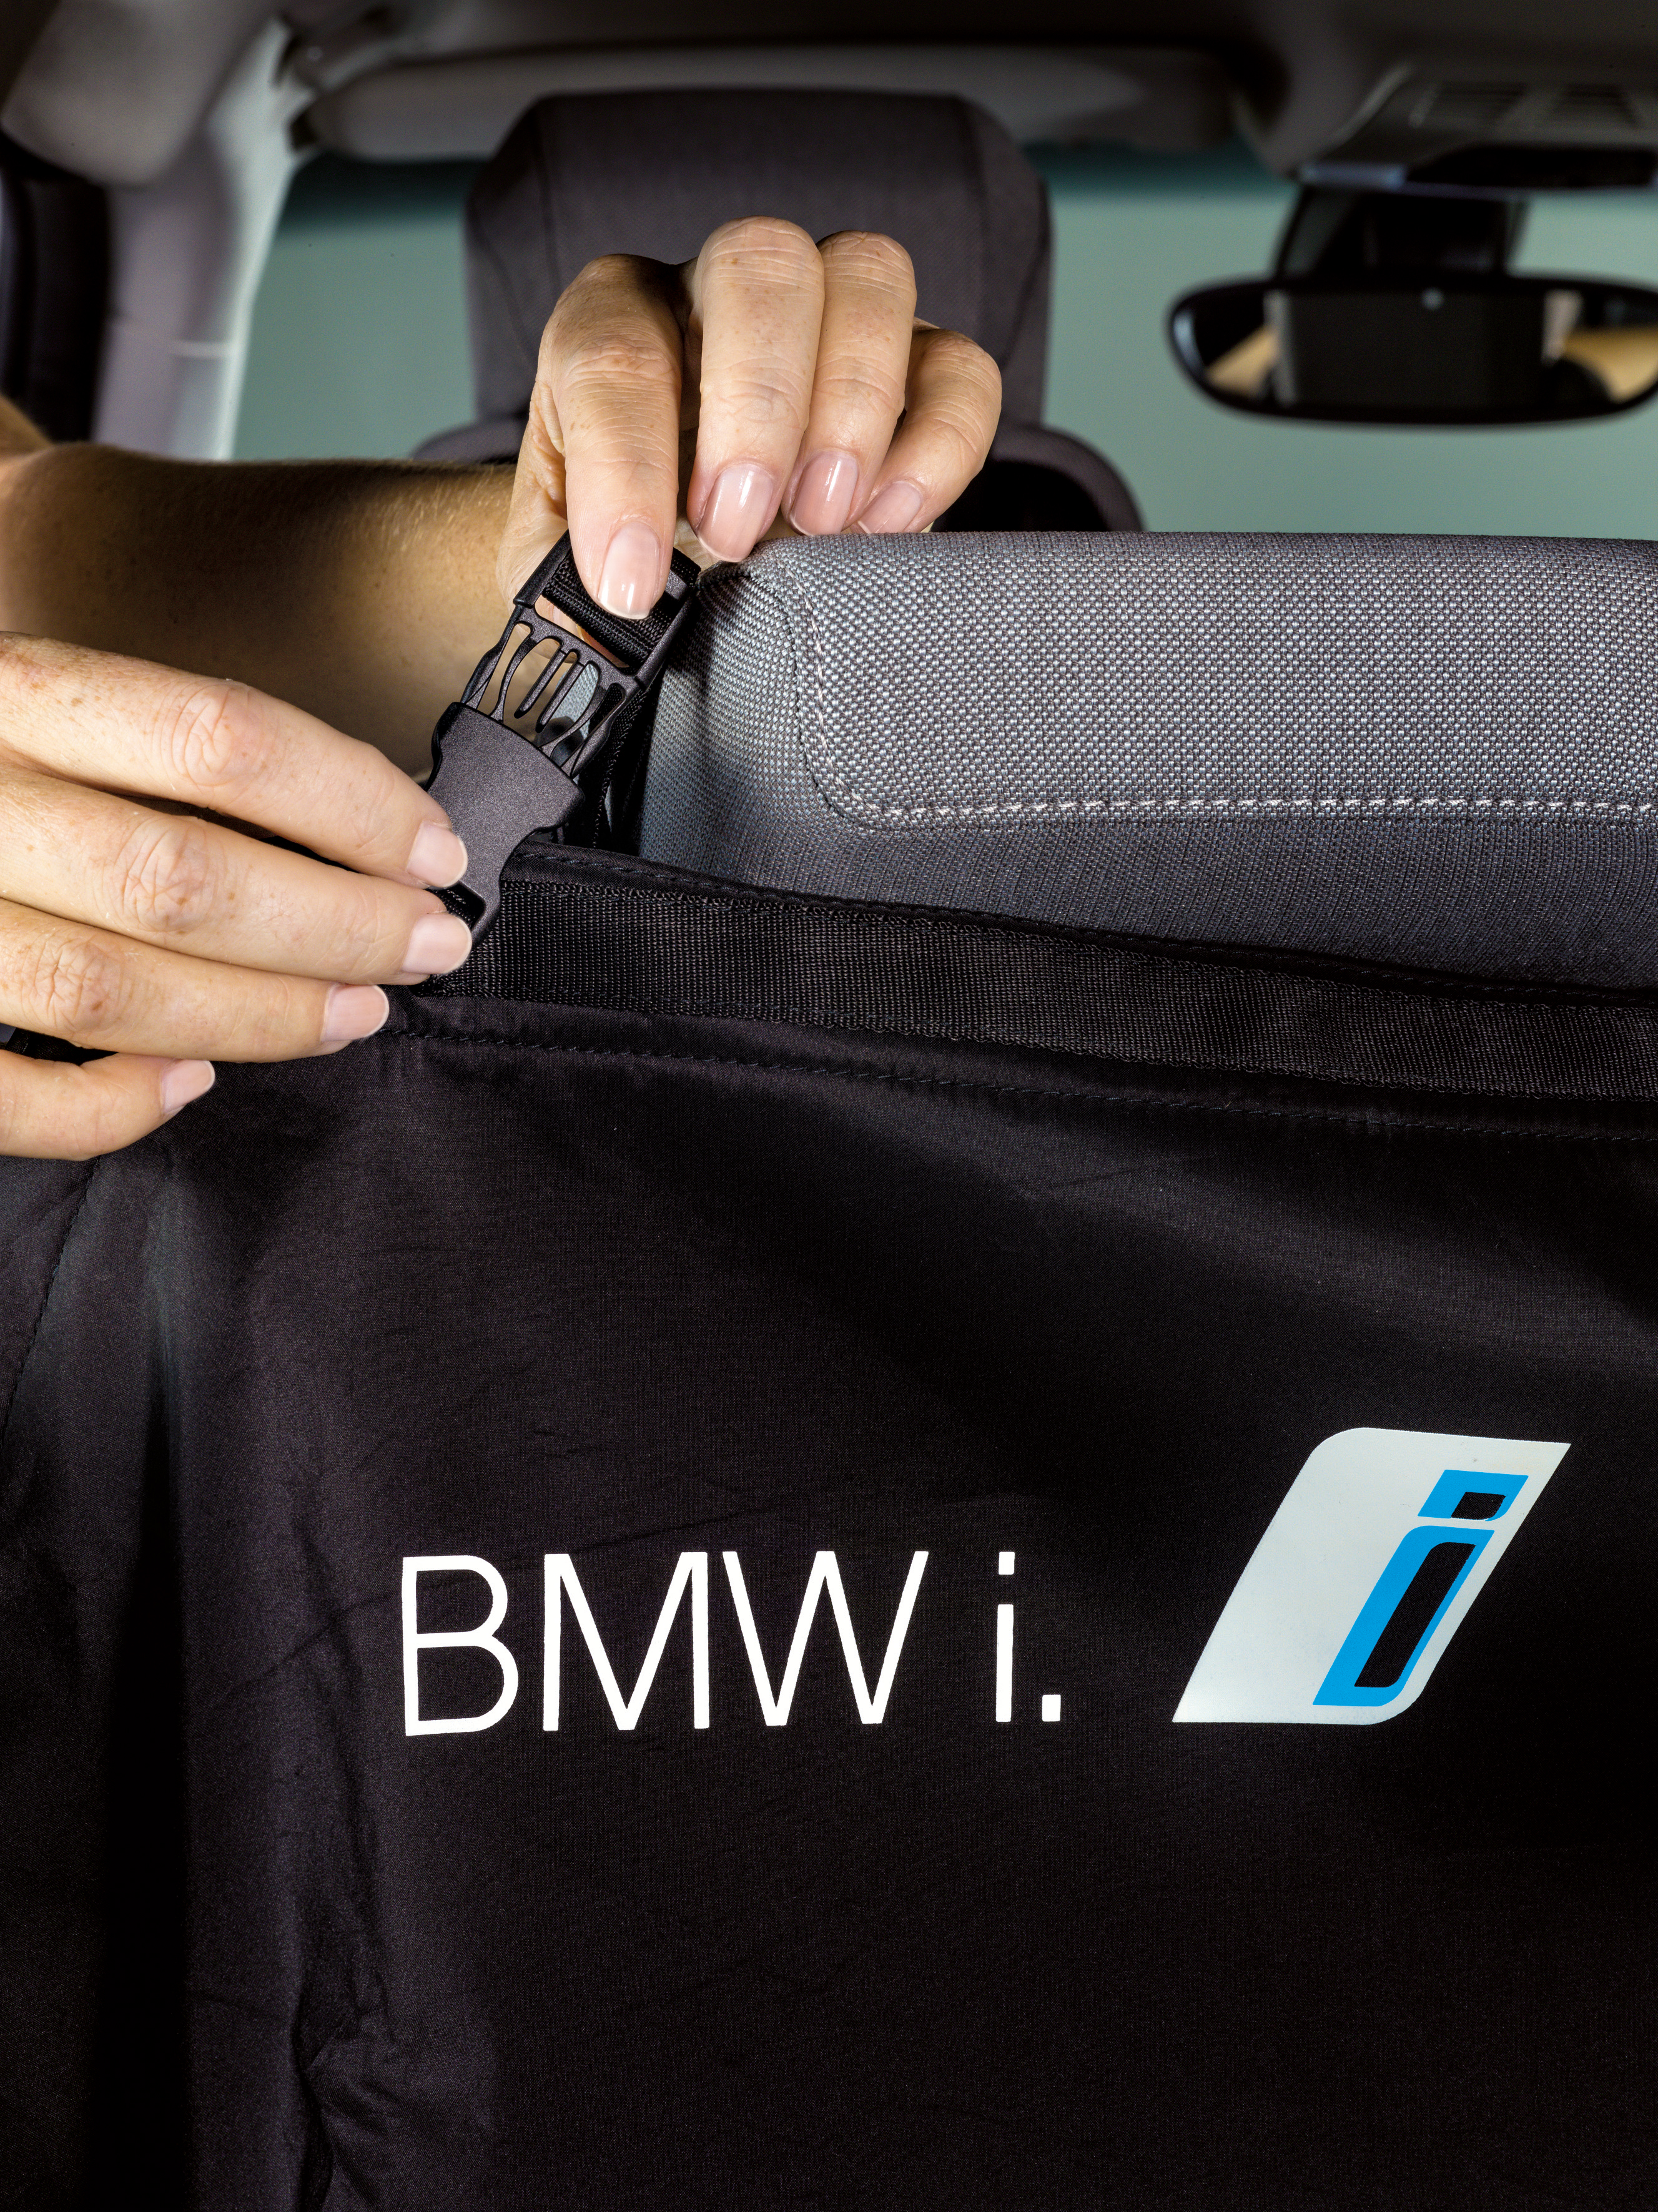 Original BMW i Zubehör. BMW i Gepäckraumschutz im BMW i3 (08/2014)